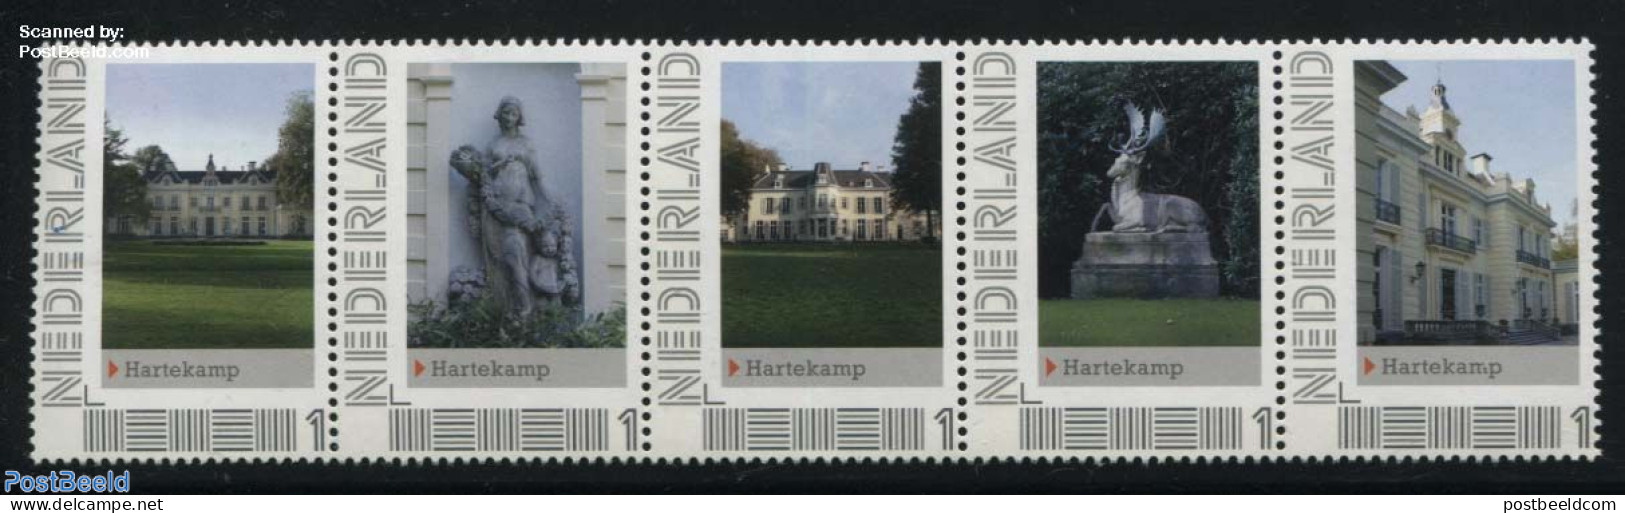 Netherlands - Personal Stamps TNT/PNL 2012 Hartekamp 5v [::::], Mint NH, Castles & Fortifications - Sculpture - Castles